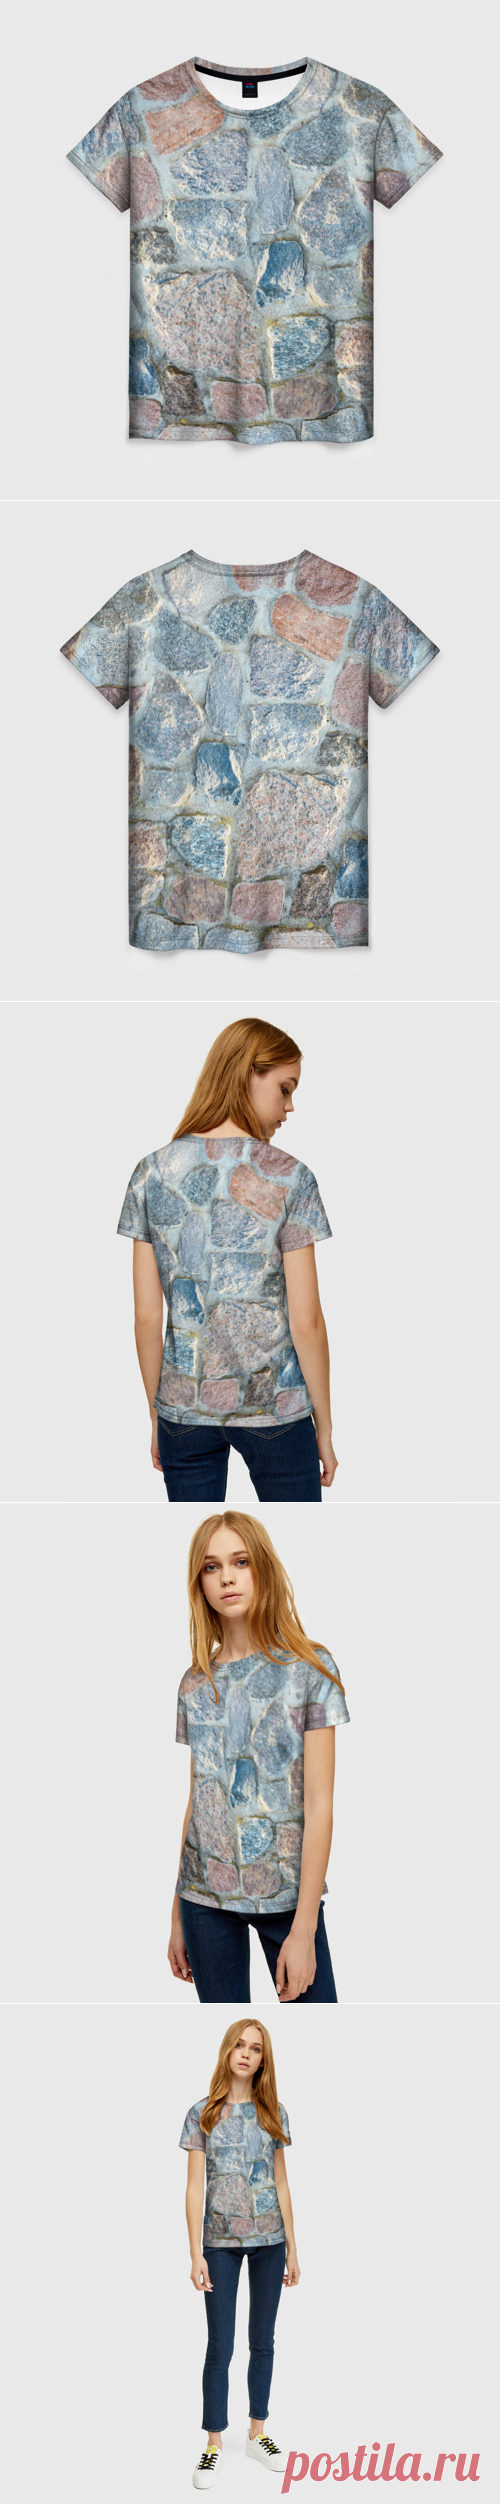 Женская футболка 3D Каменный фон - купить по цене 1290 руб в интернет-магазине Всемайки, арт 3644325